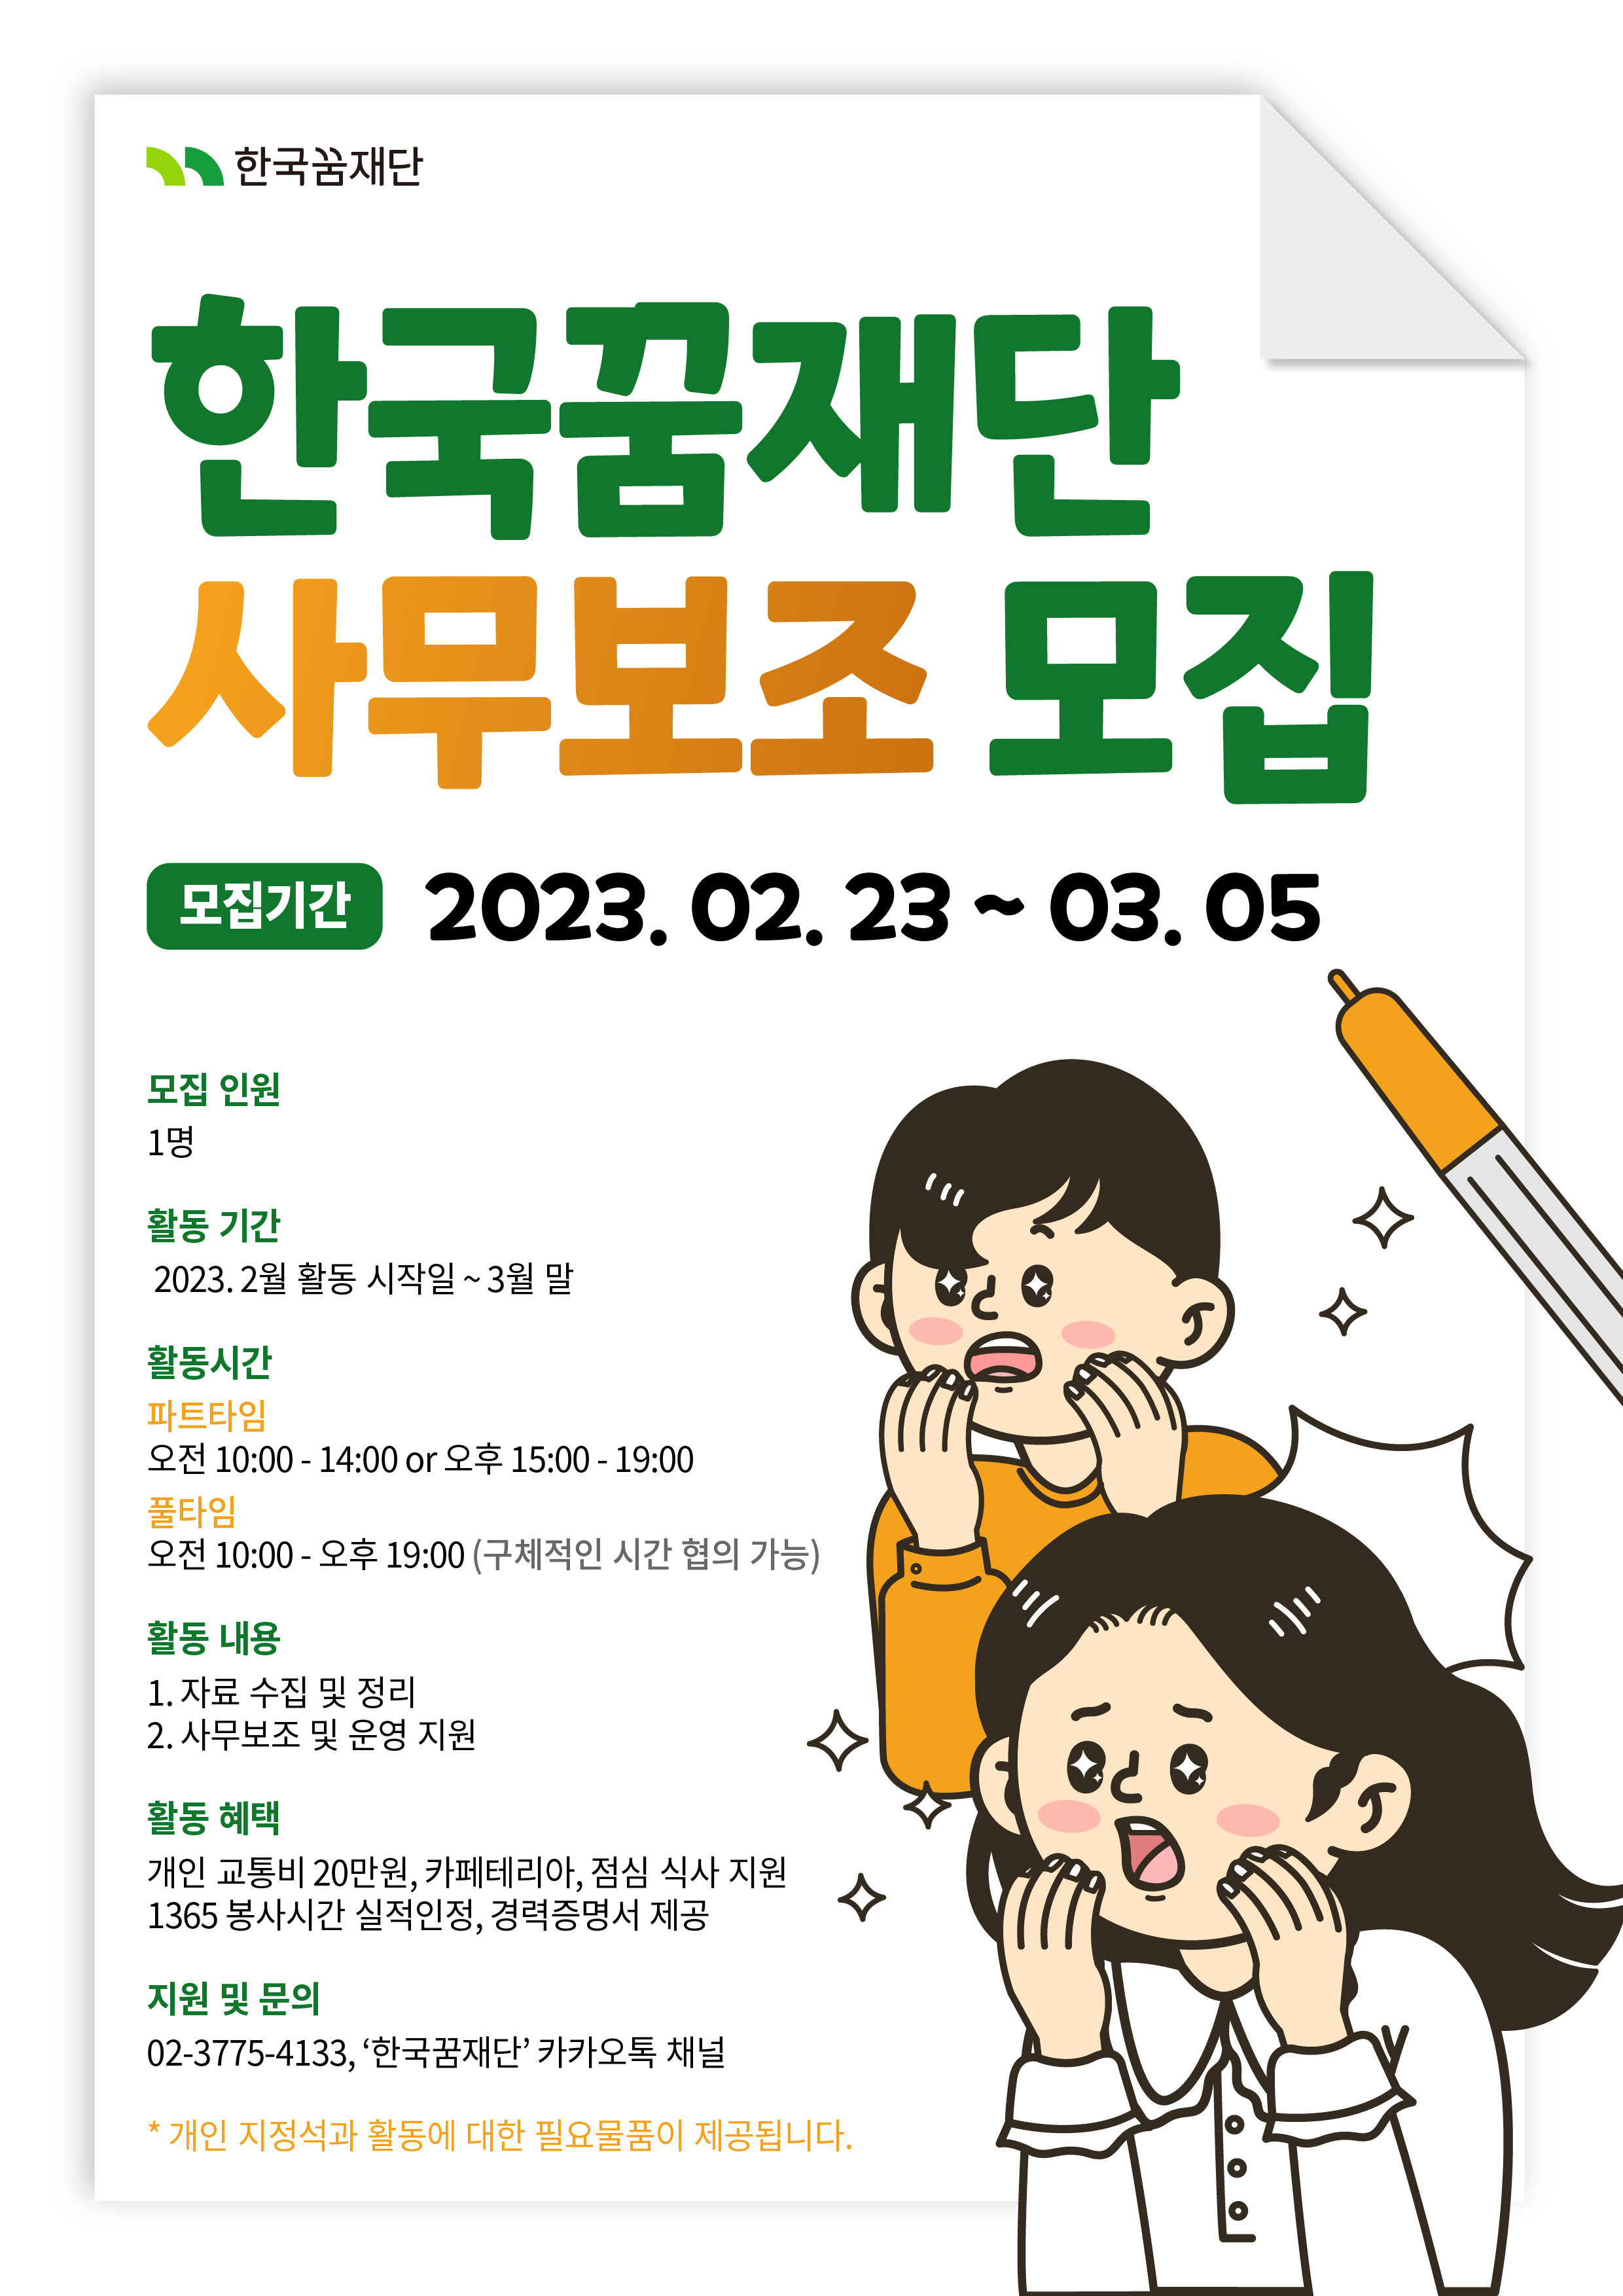 한국꿈재단 2023 '런치위드히어로' 사업 자원봉사자 모집